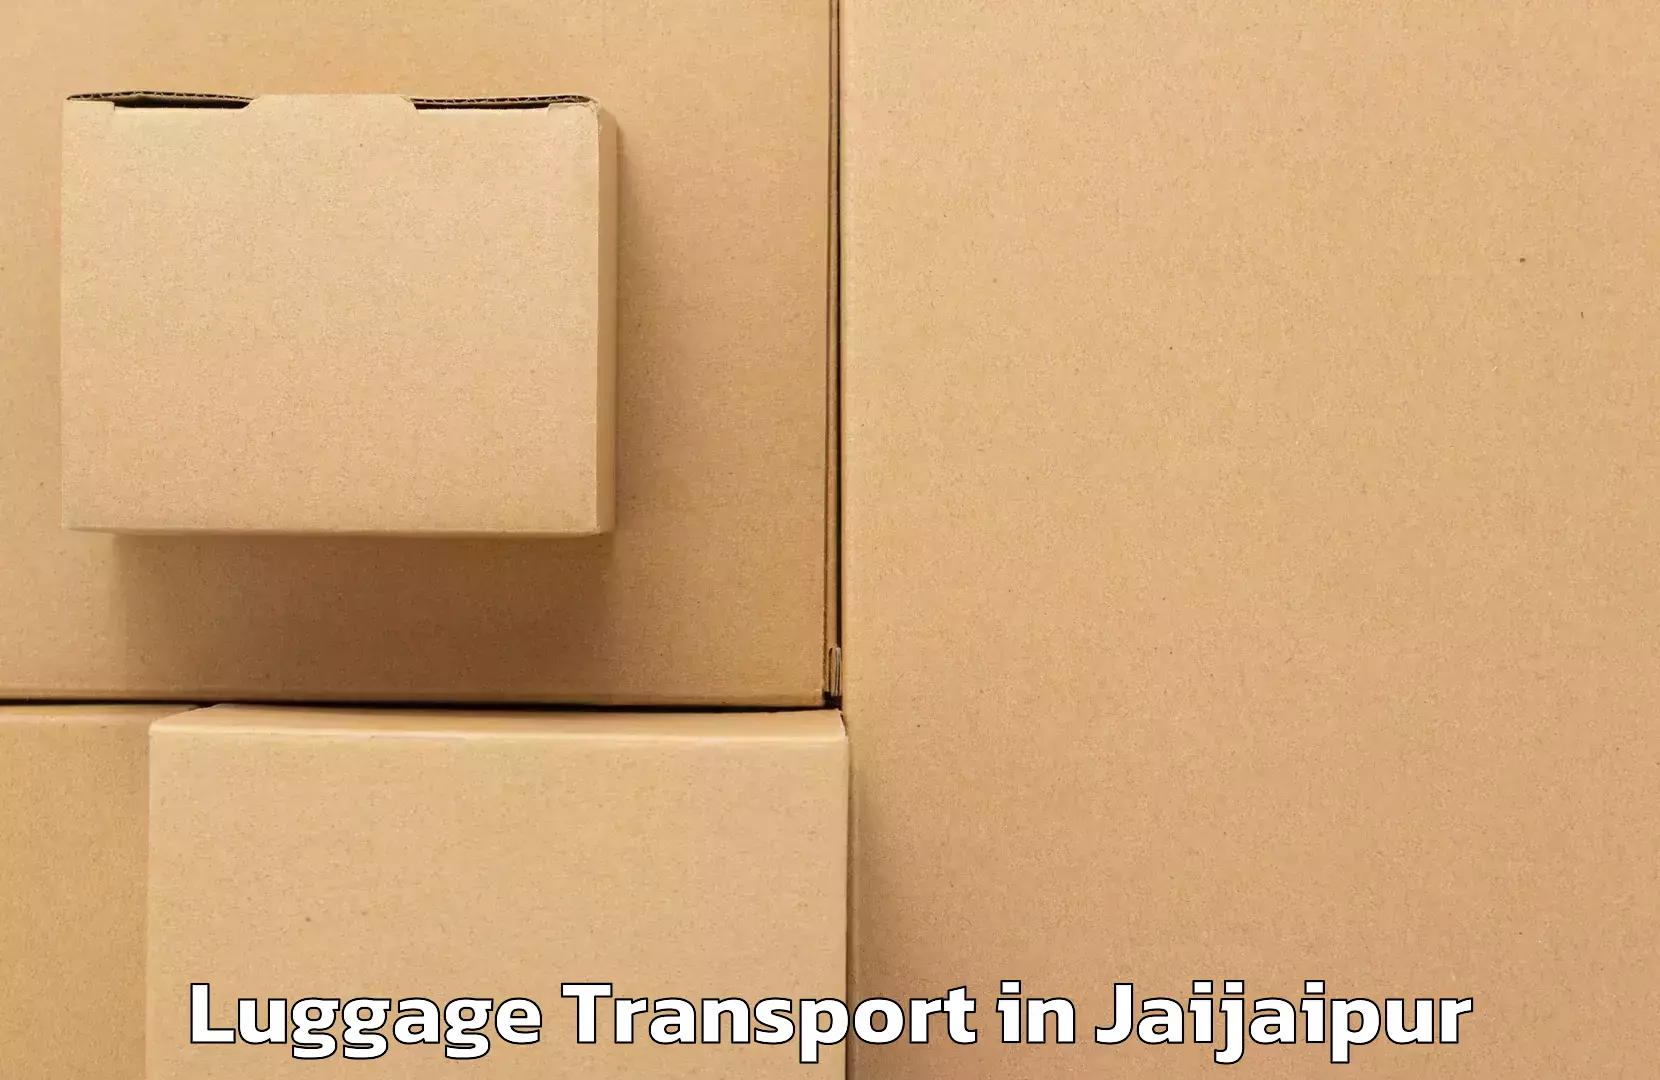 Luggage transport rates in Jaijaipur